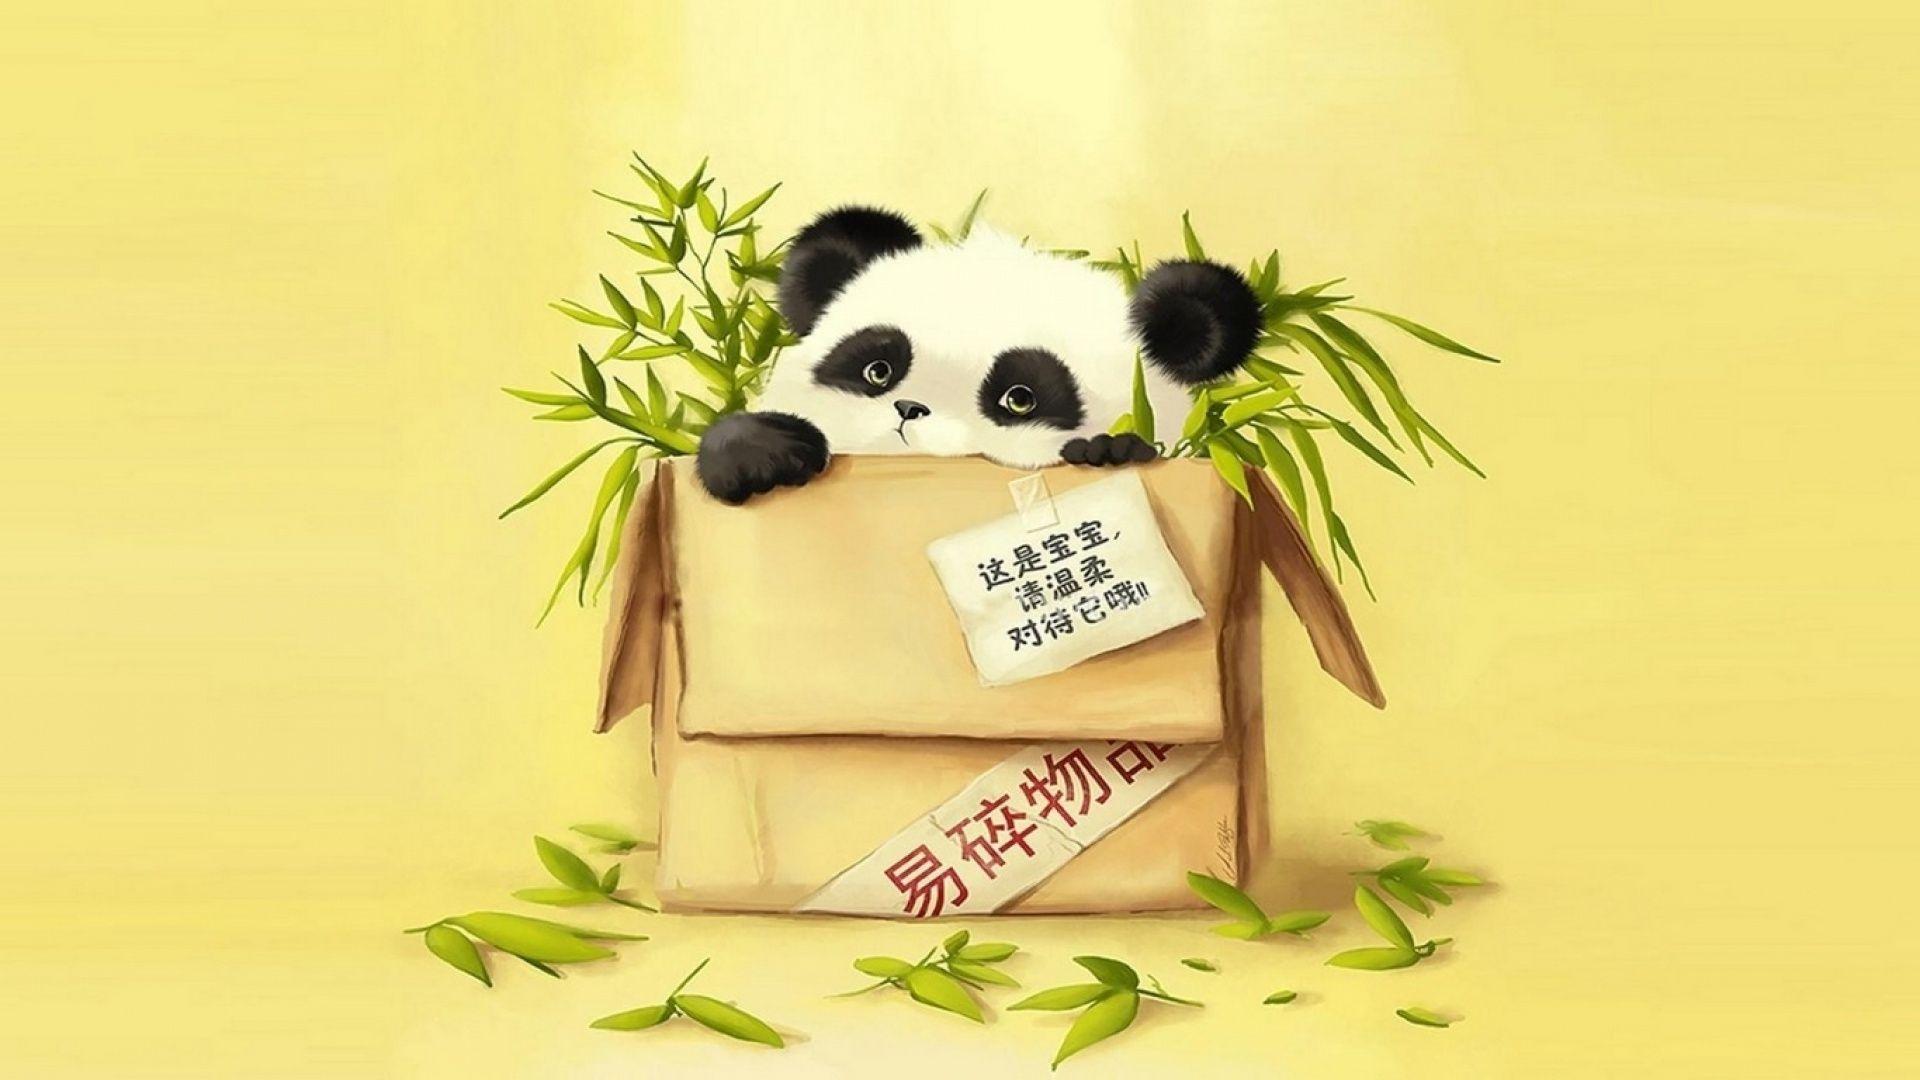 Cute Baby Panda Wallpaper HD Baby SmileD Wallpaper